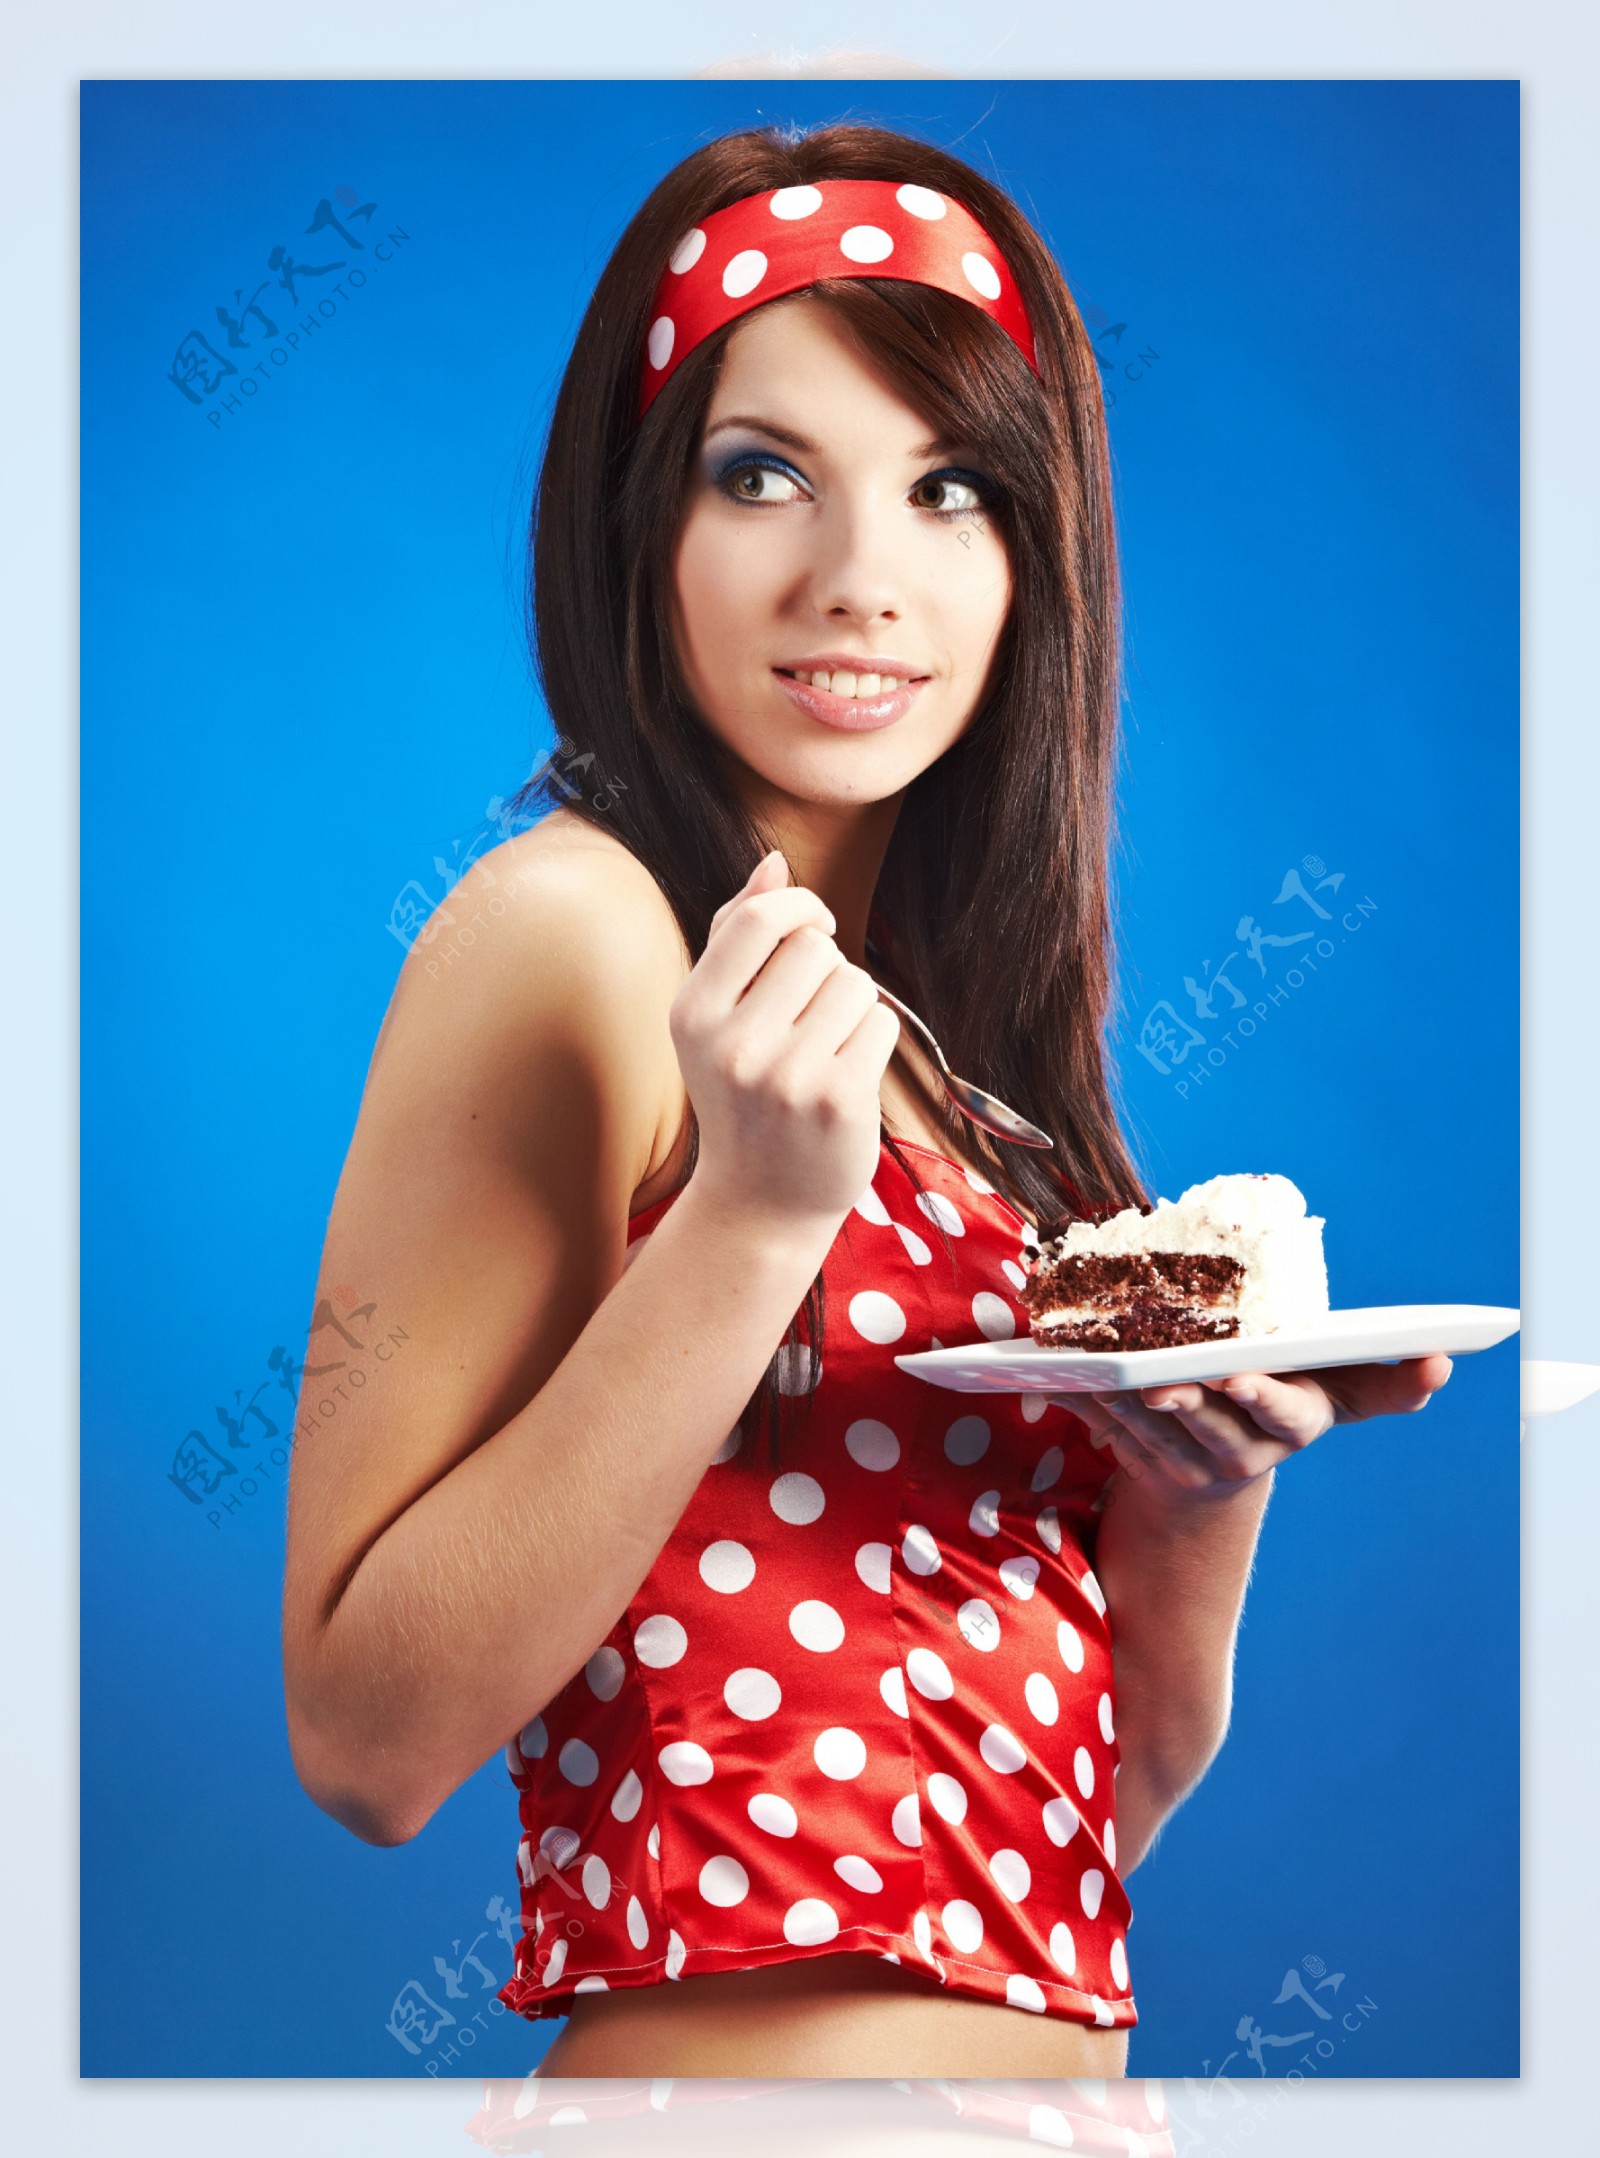 正在吃蛋糕的性感美女图片